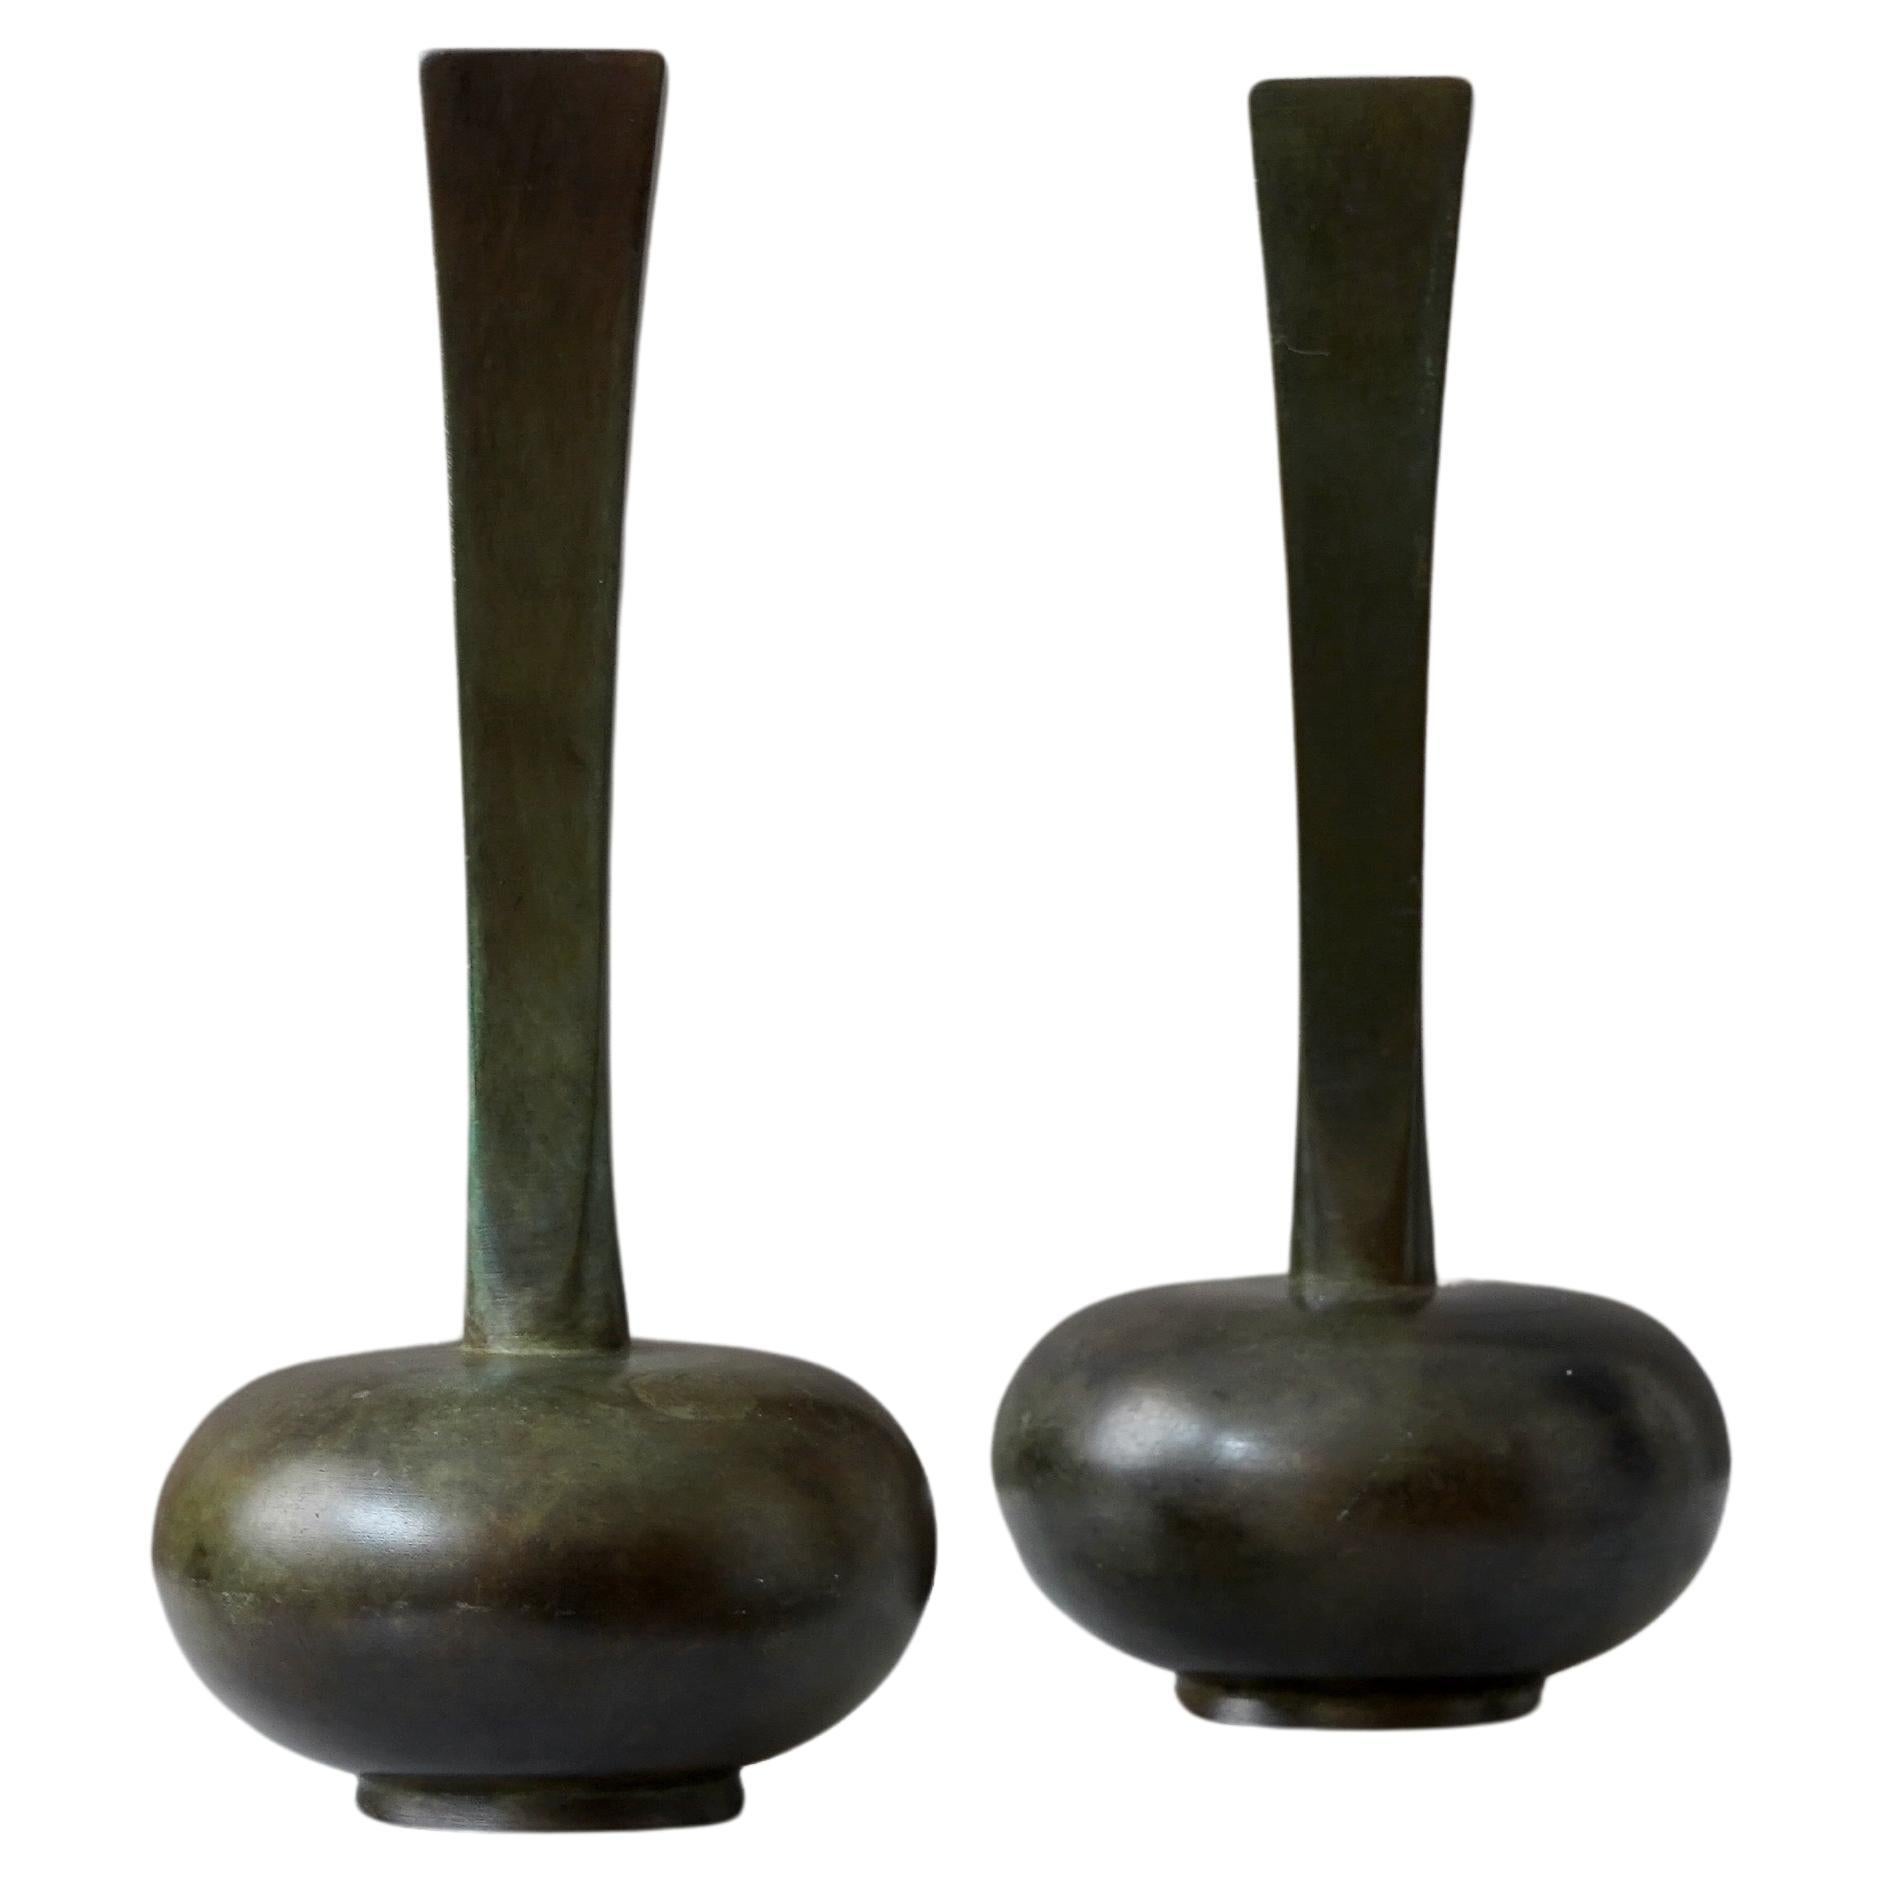 Set von 2 Art-Déco-Vasen aus Bronze von GAB Guldsmedsaktiebolaget, Schweden, 1930er Jahre